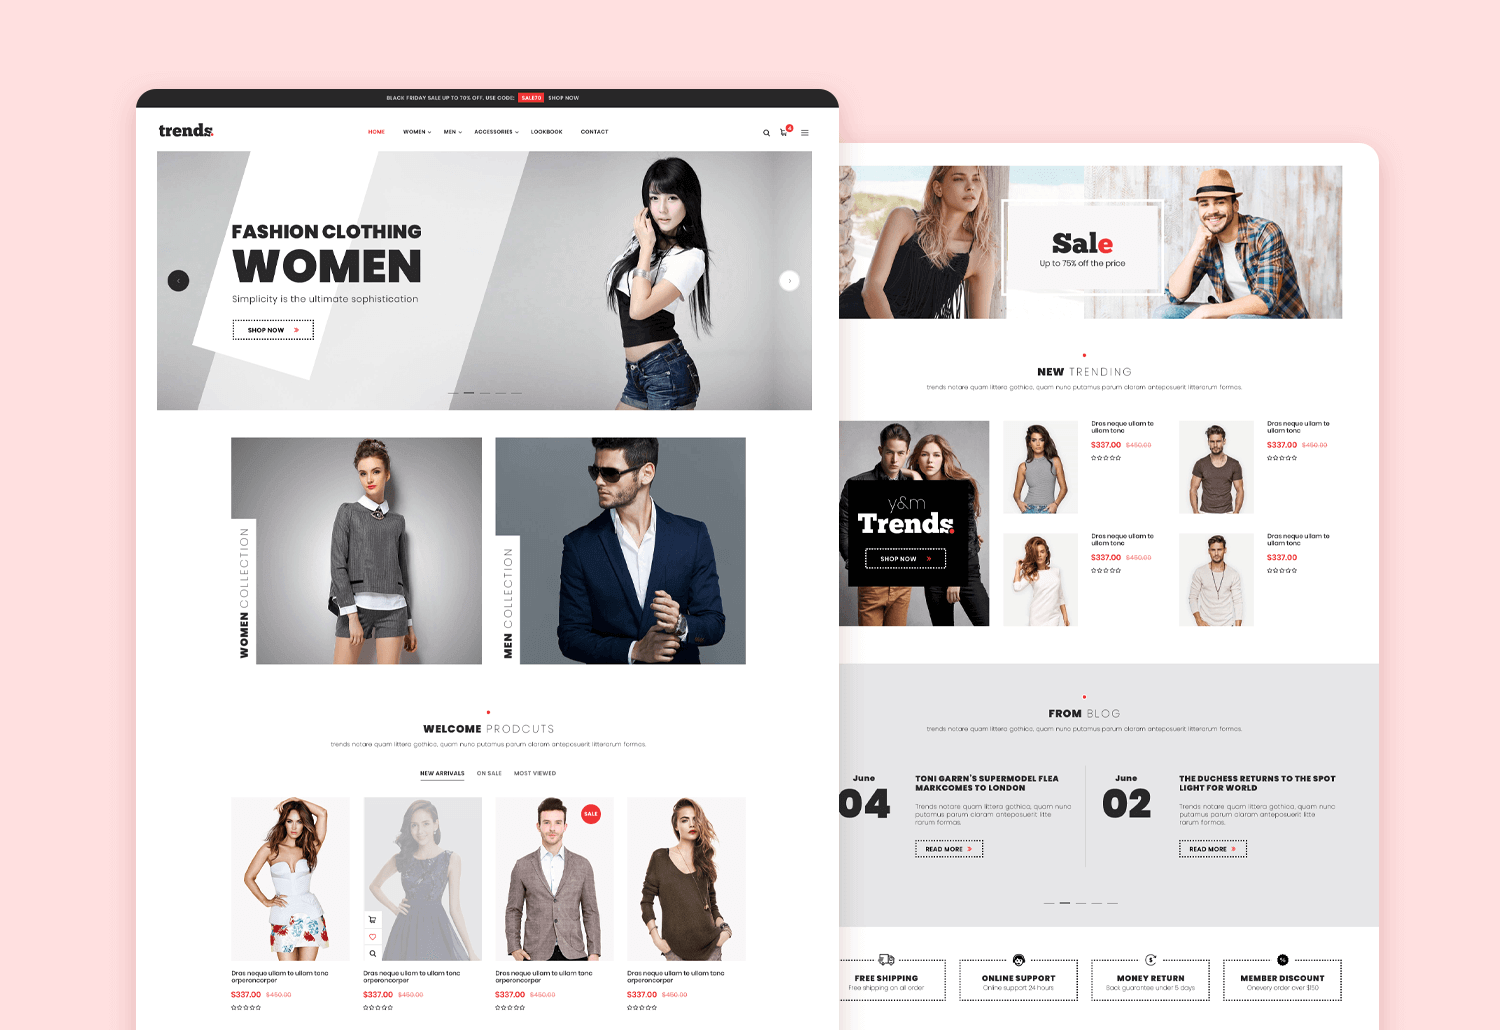 website mockup design - trends